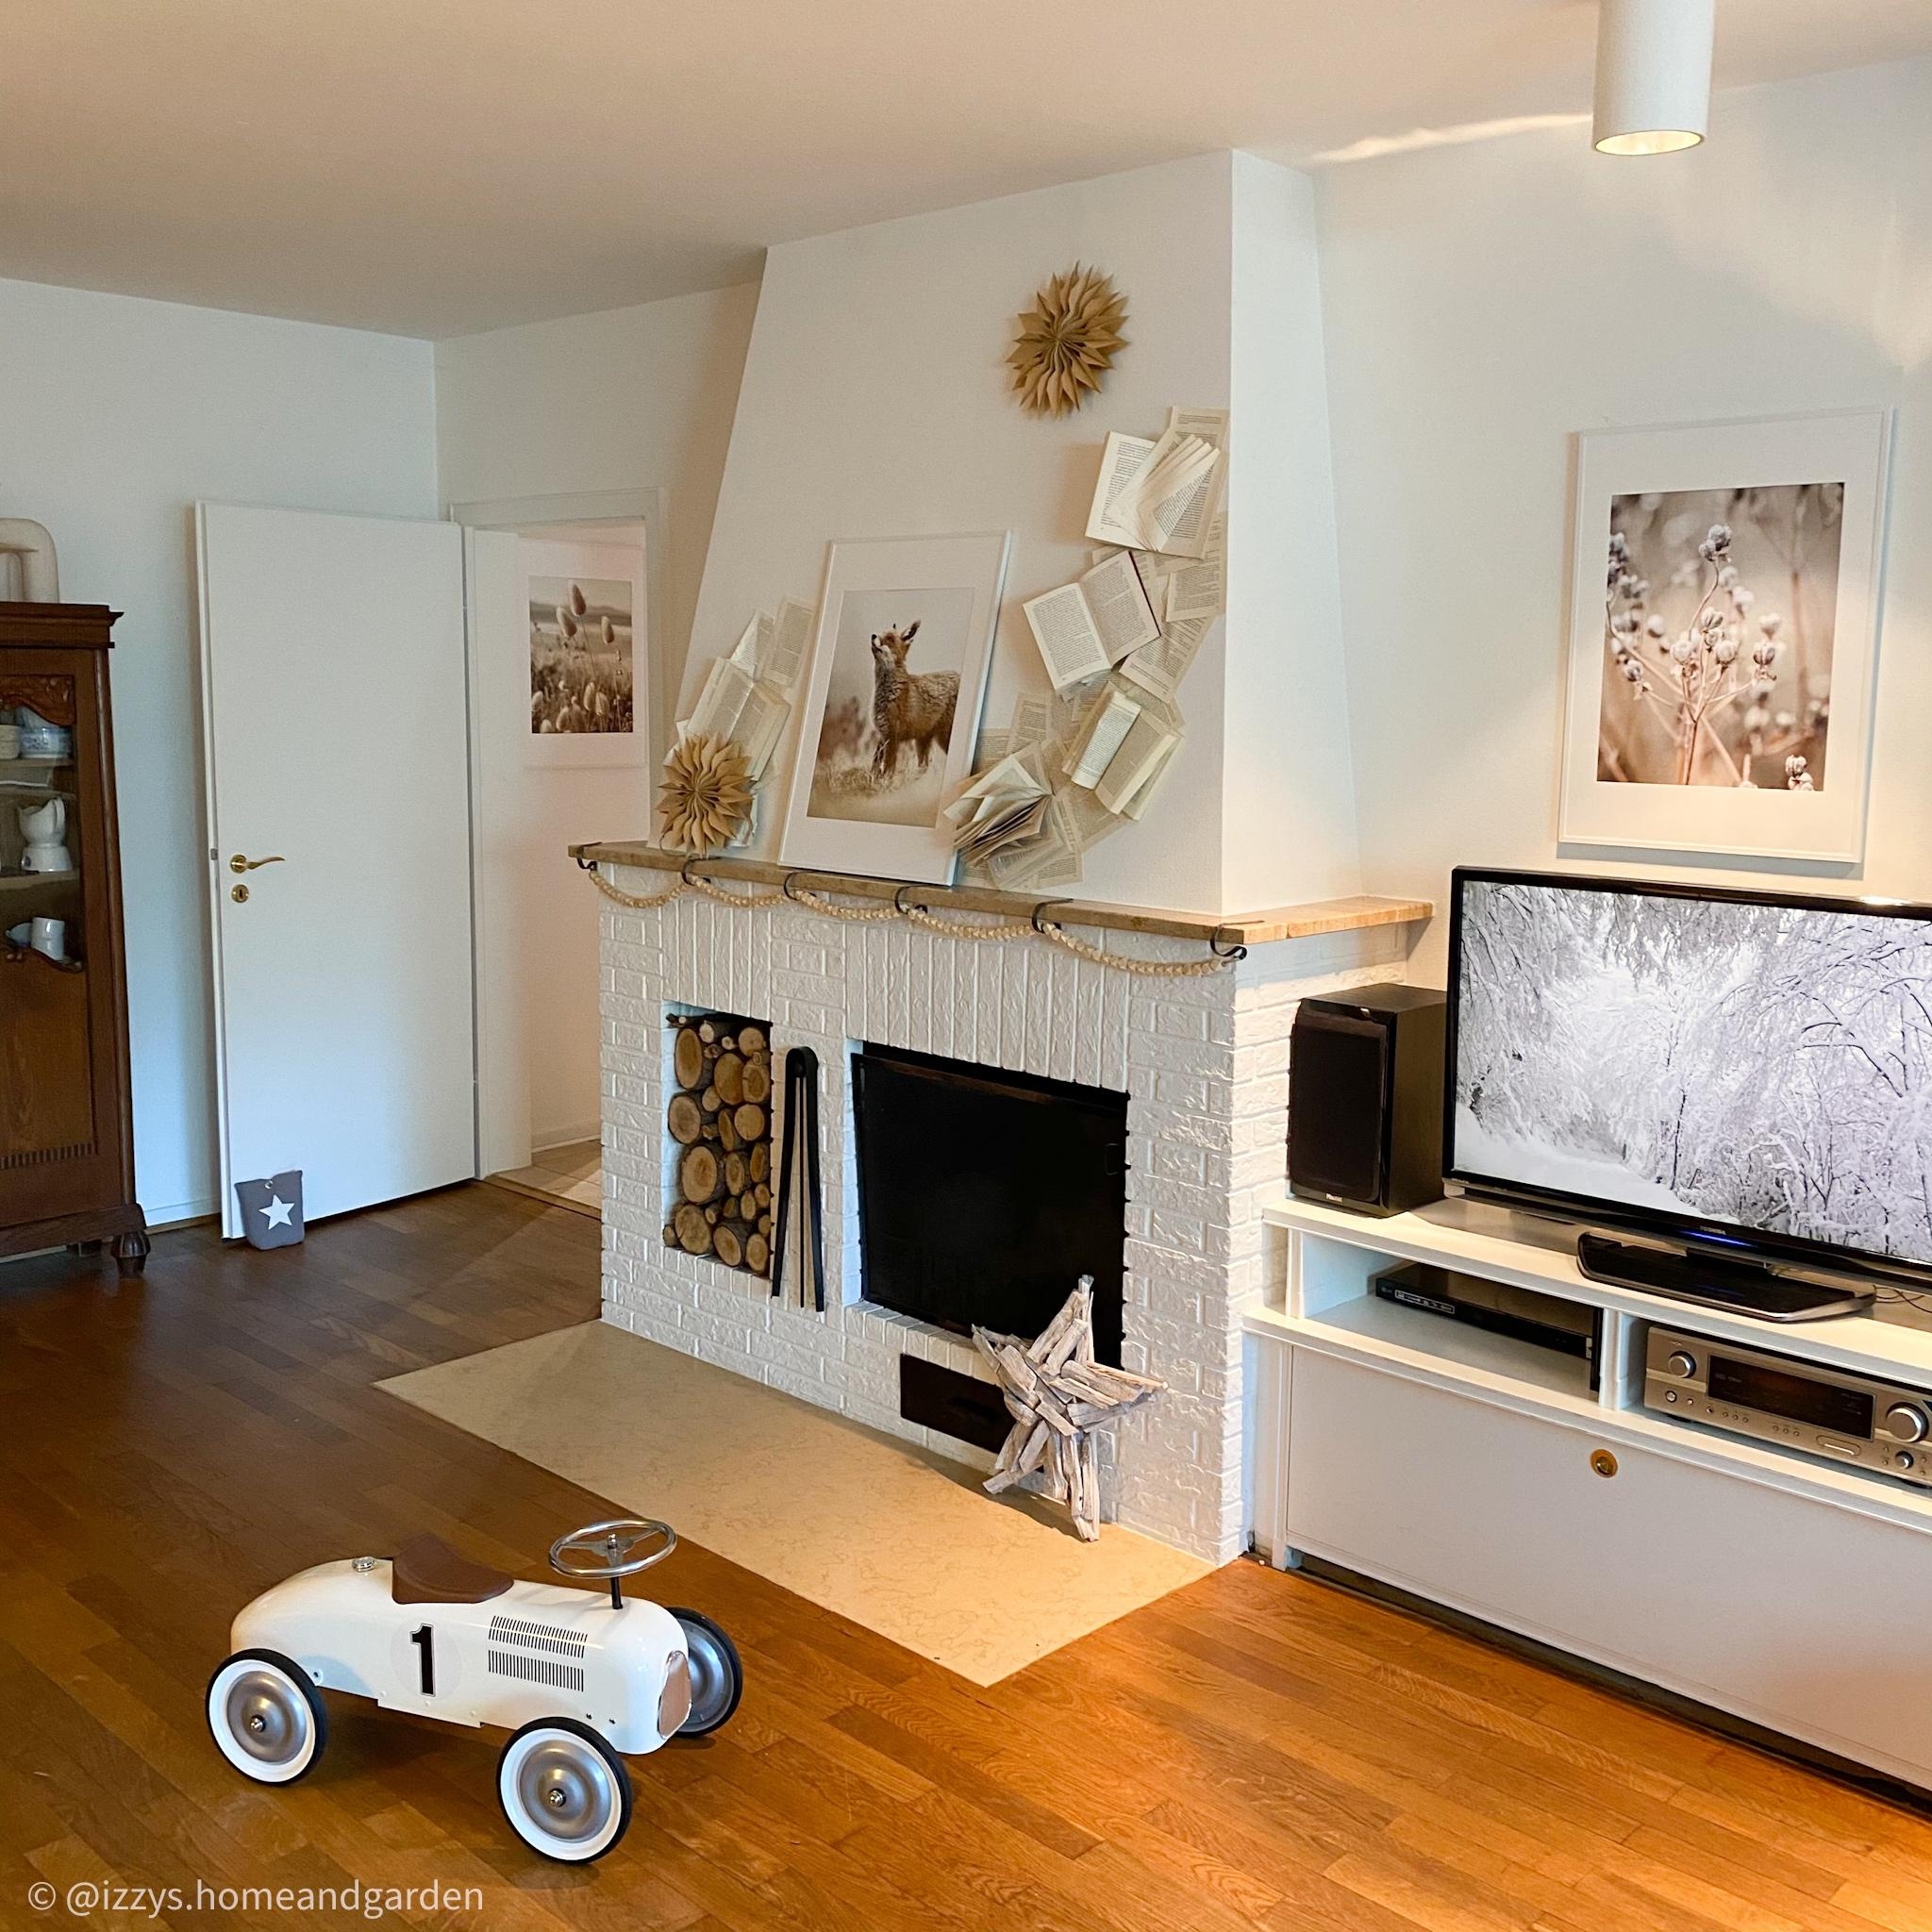 #wohnzimmer #livingroom #poster #bilder #wohnzimmerinspiration #kamin #diy #papiersterne